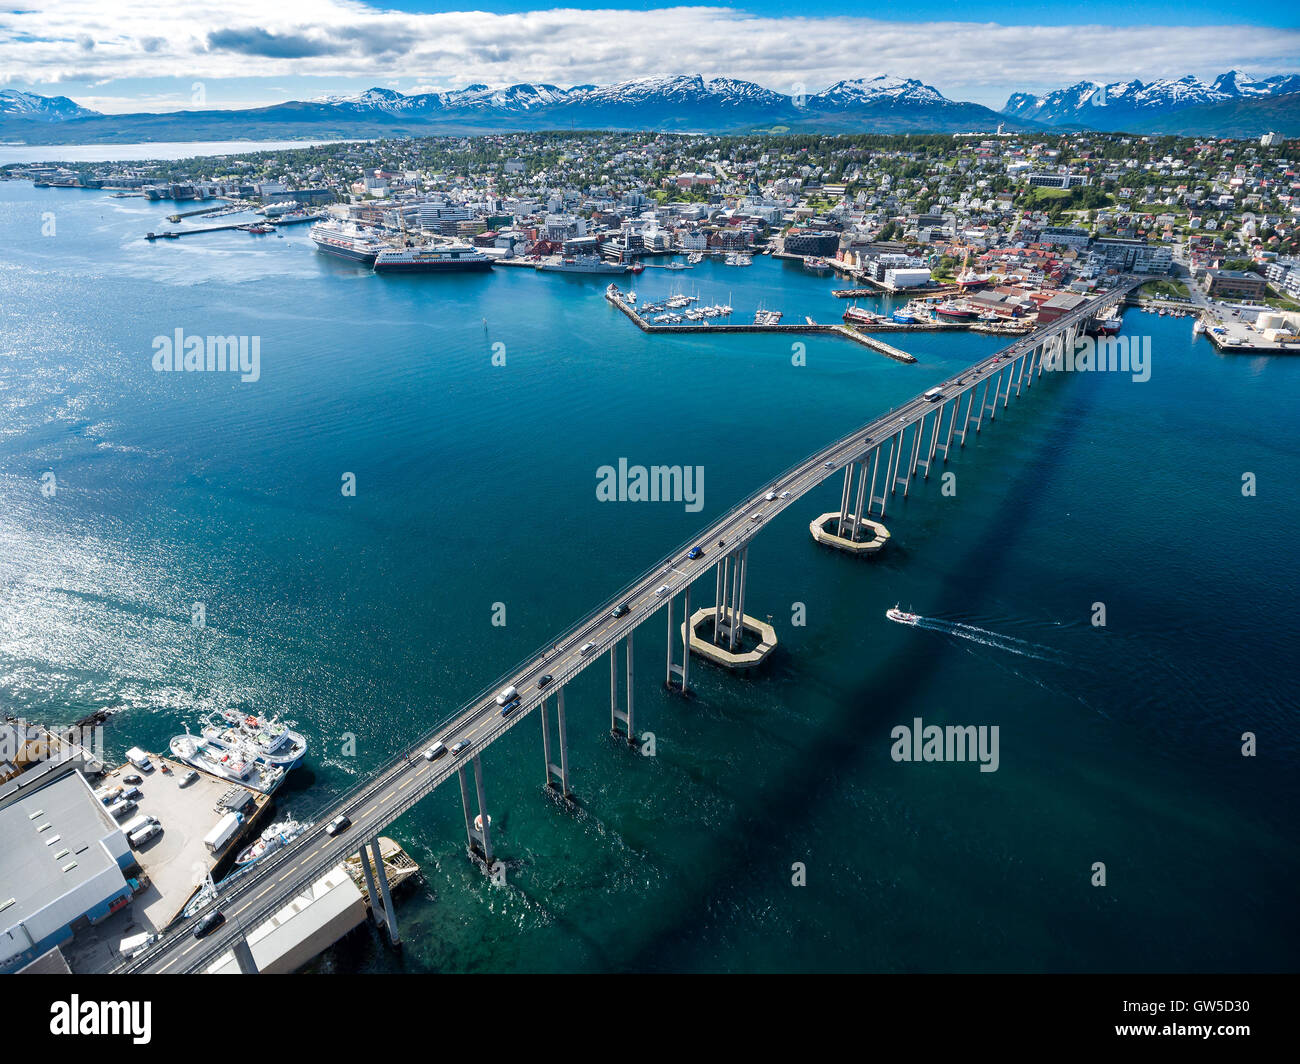 Ponte della città Tromso, Norvegia la fotografia aerea. Tromso è considerata la città più settentrionale del mondo con una popolazione abov Foto Stock